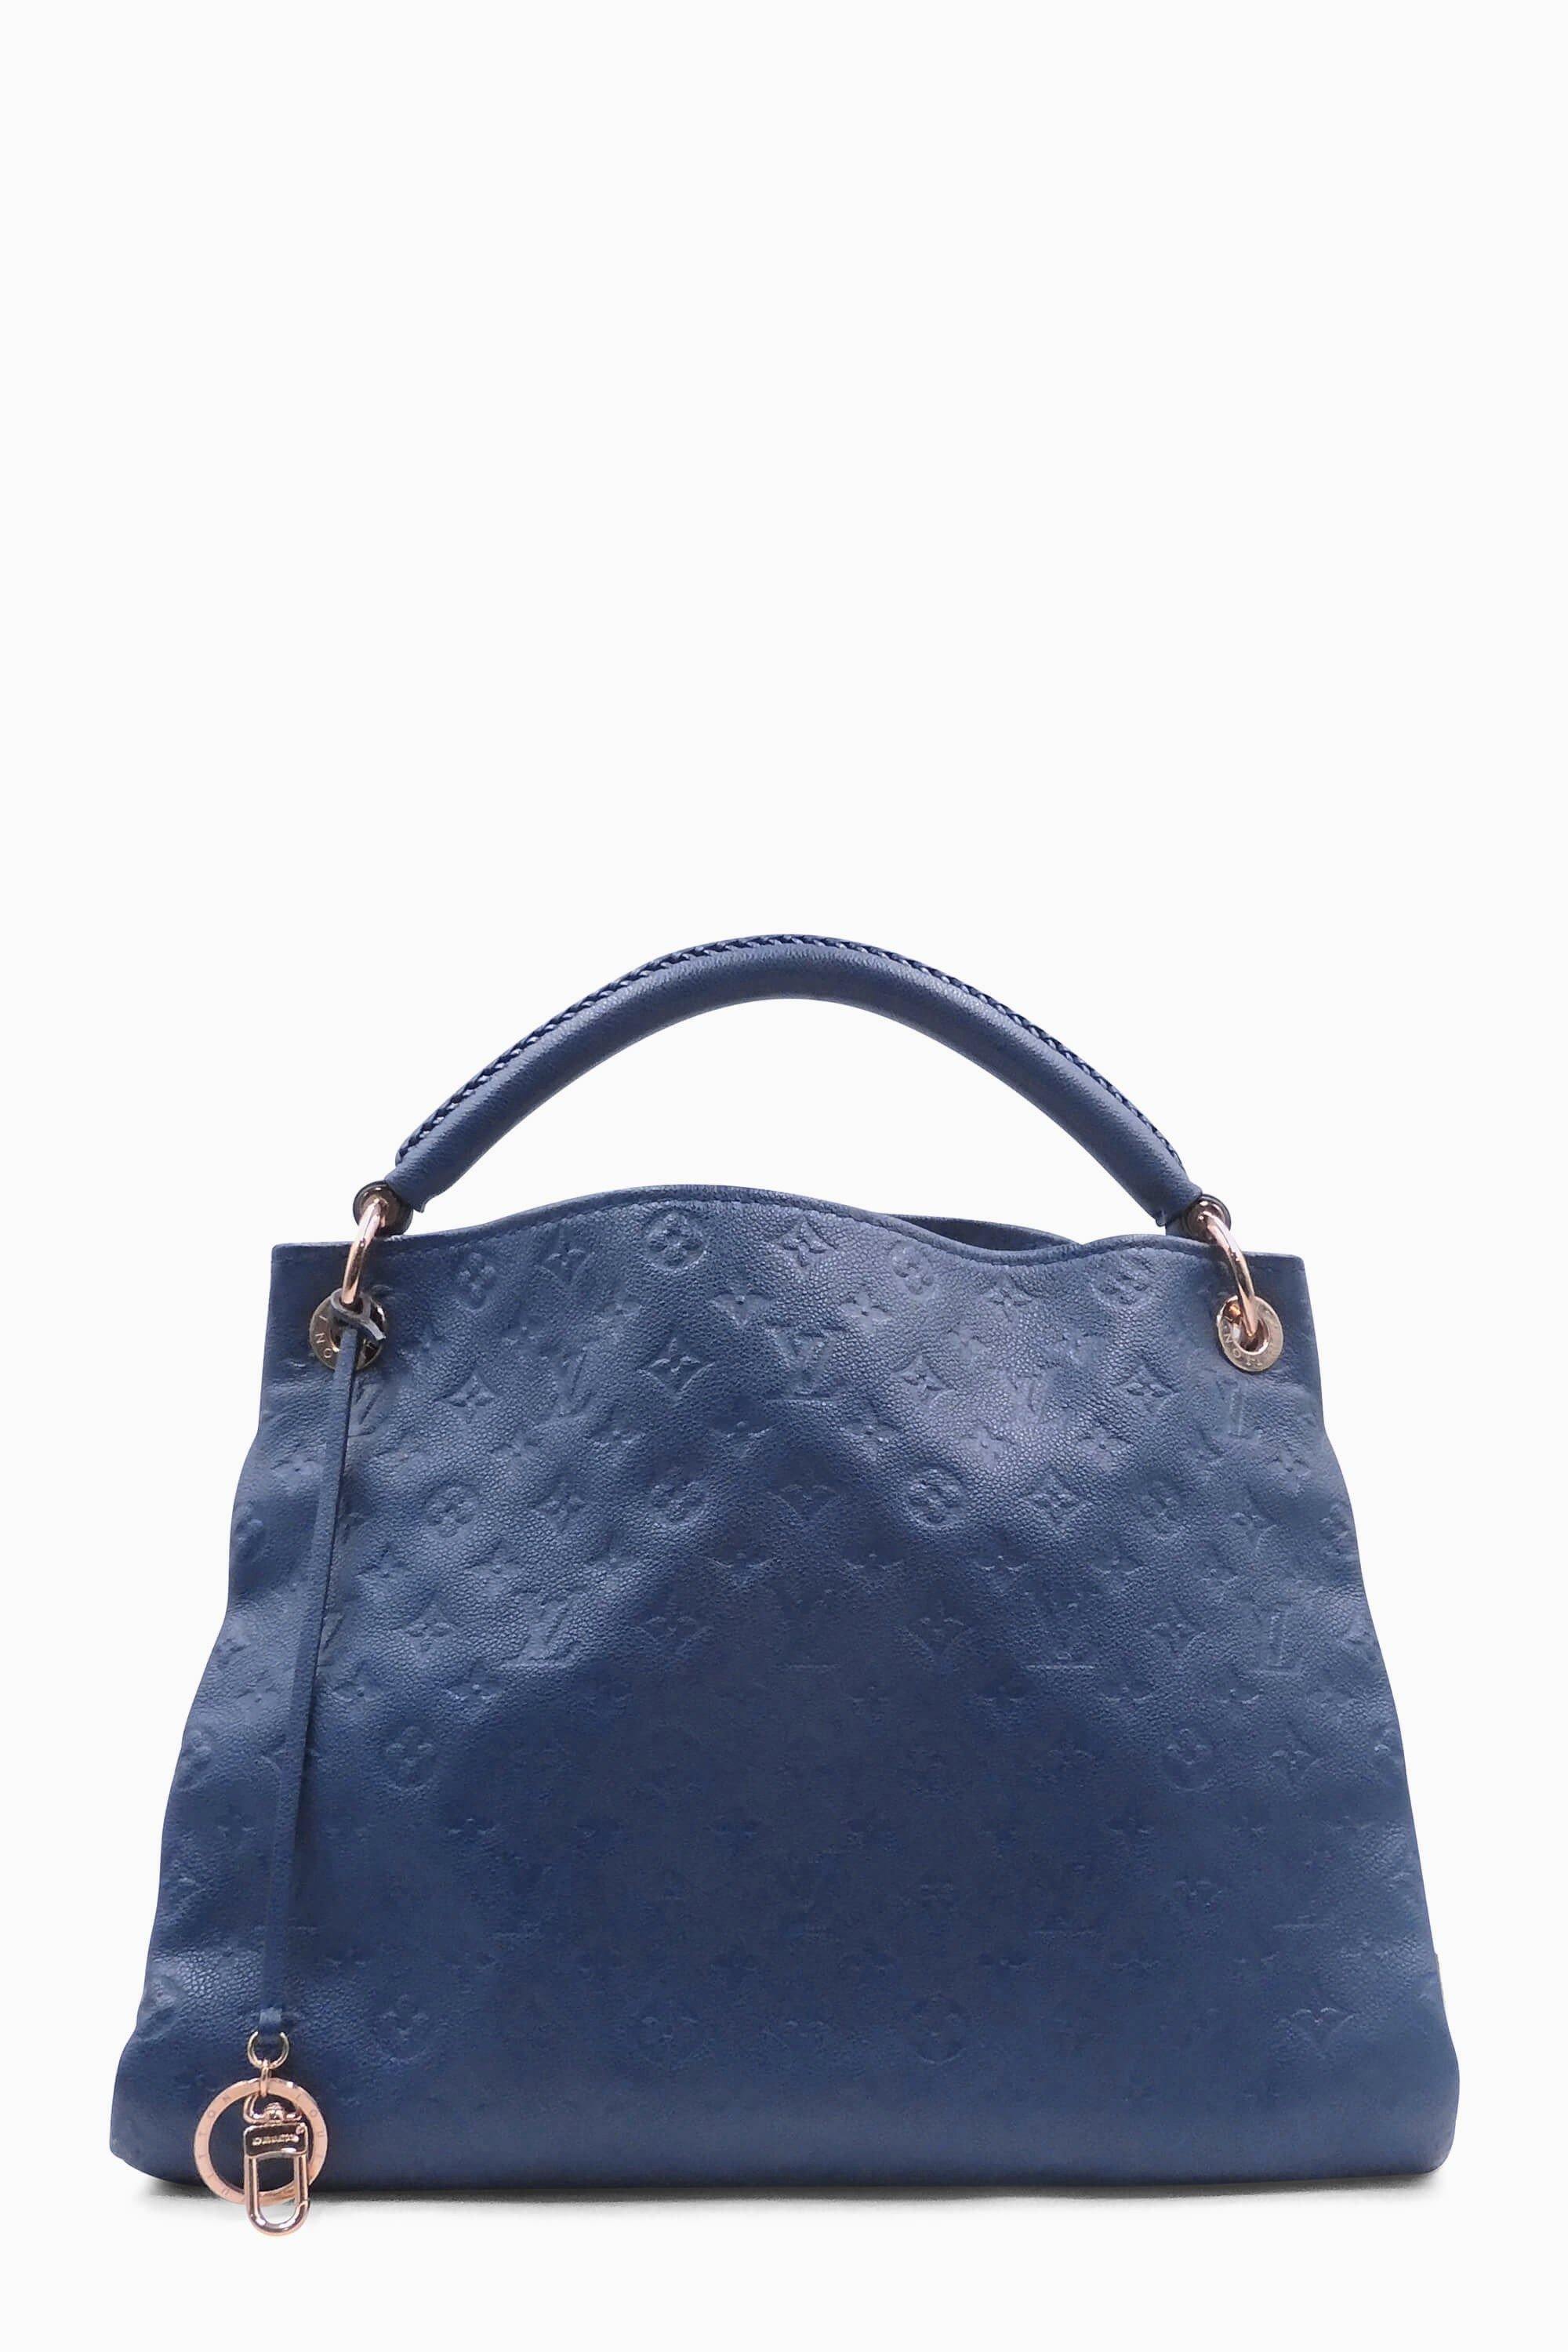 Louis Vuitton Monogram Empreinte Artsy MM - Blue Totes, Handbags